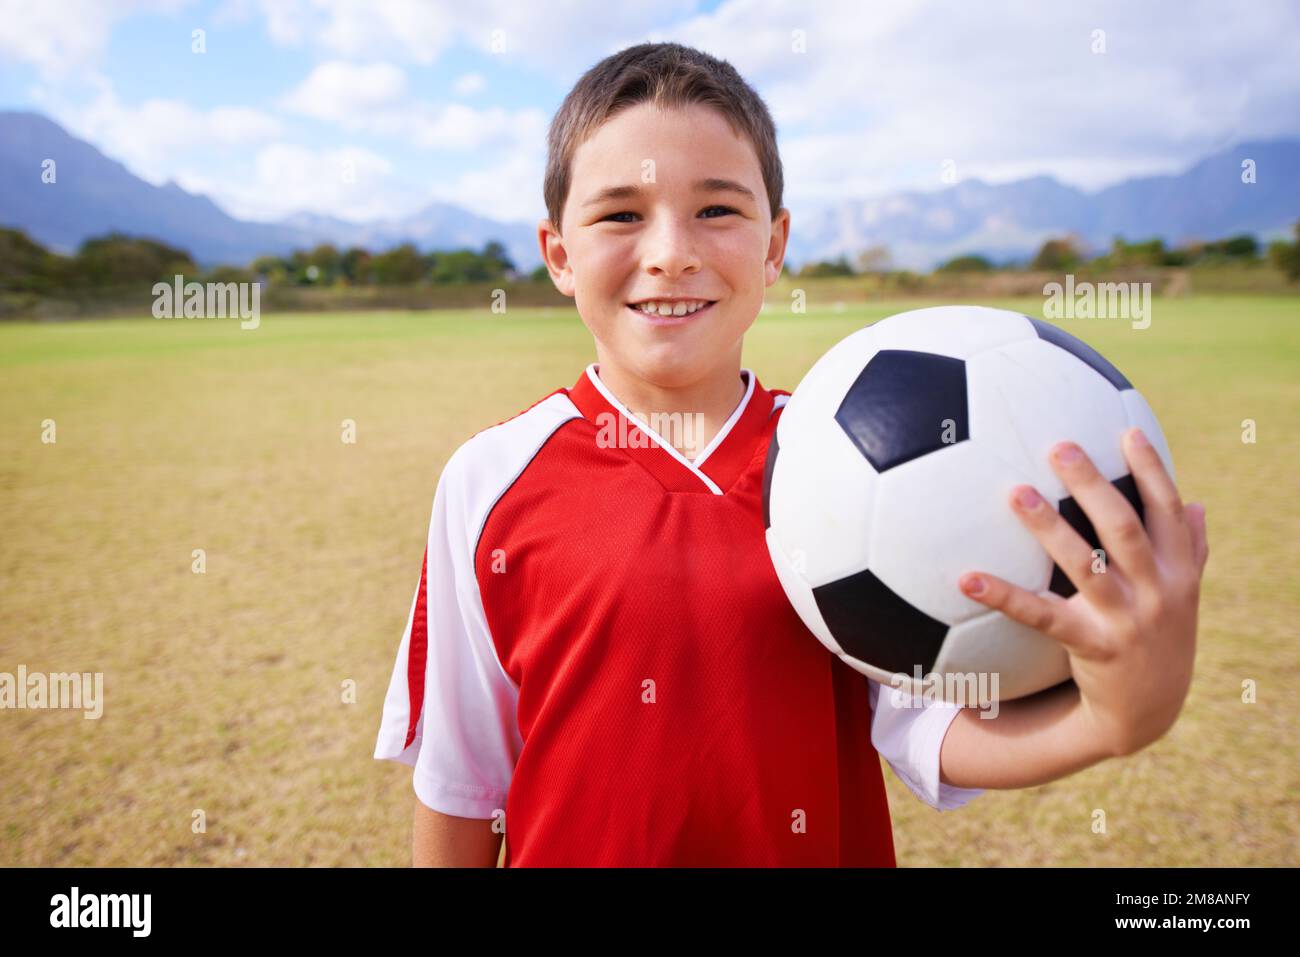 Prêt à jouer au football. Gros plan d'un jeune garçon tenant une balle de football. Banque D'Images